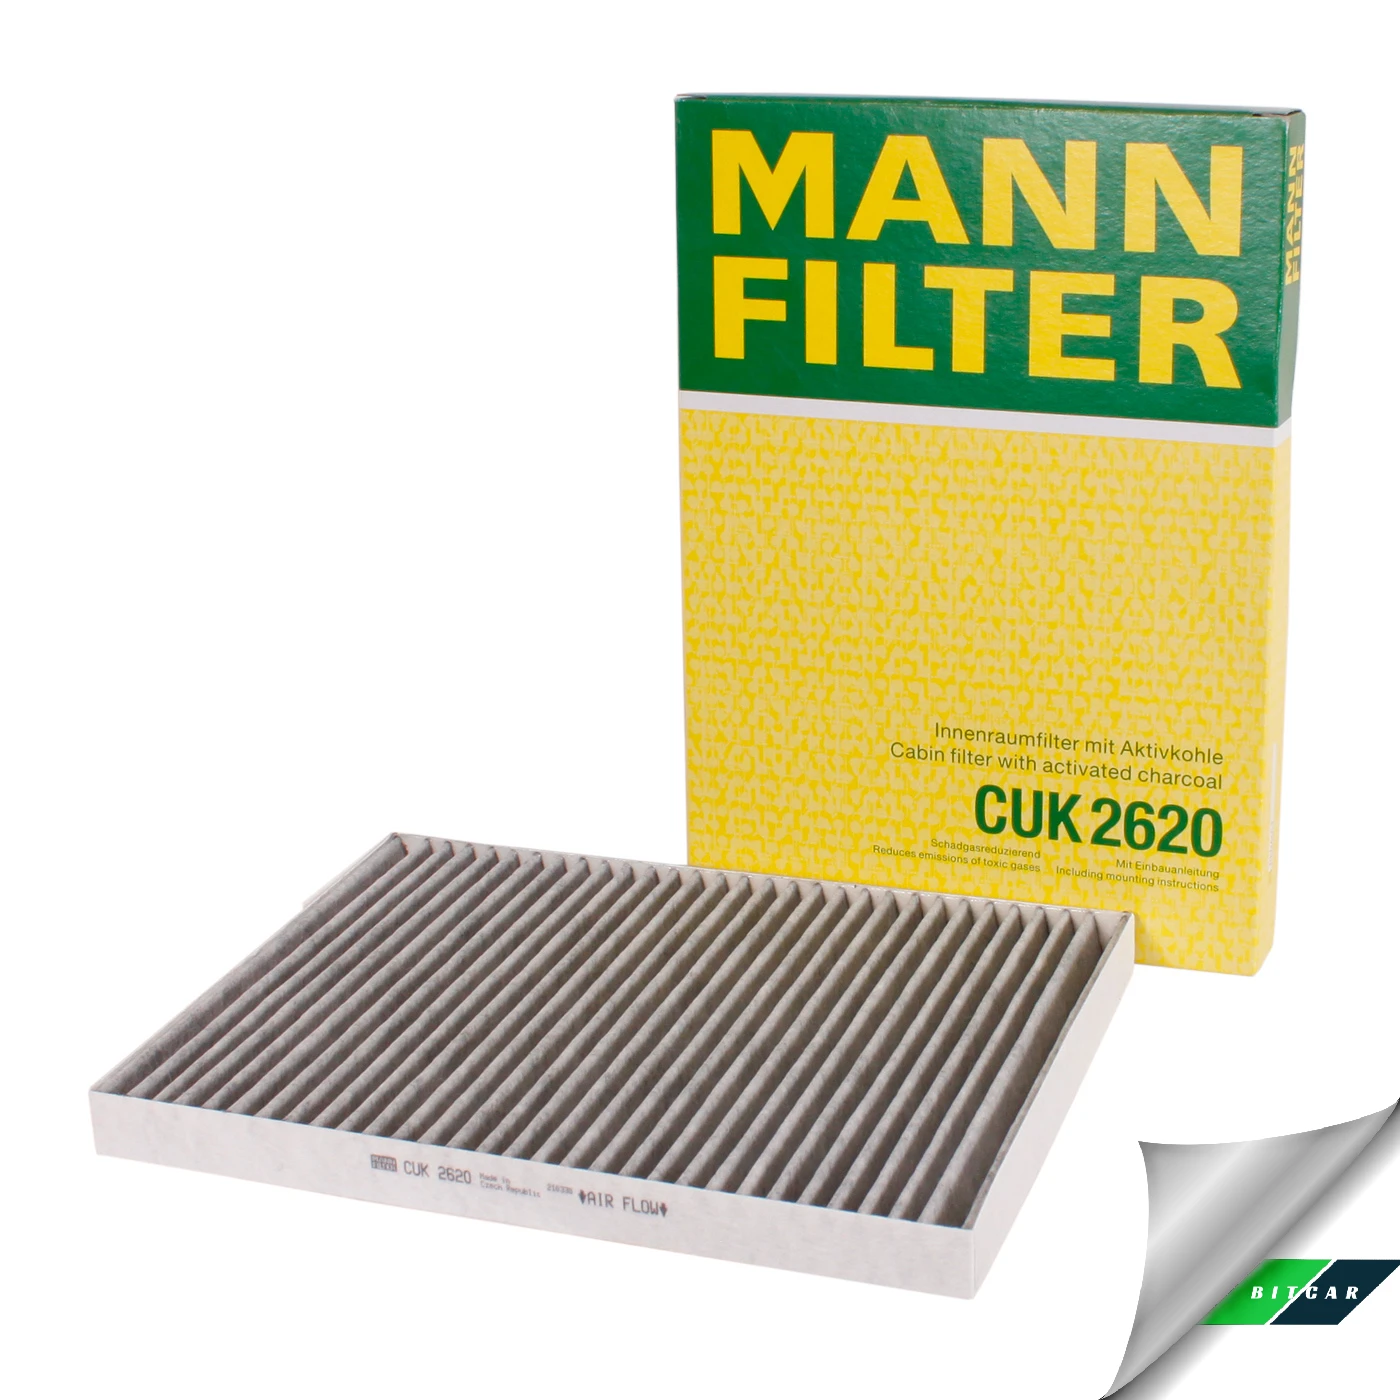 Mann Filter CUK 2620